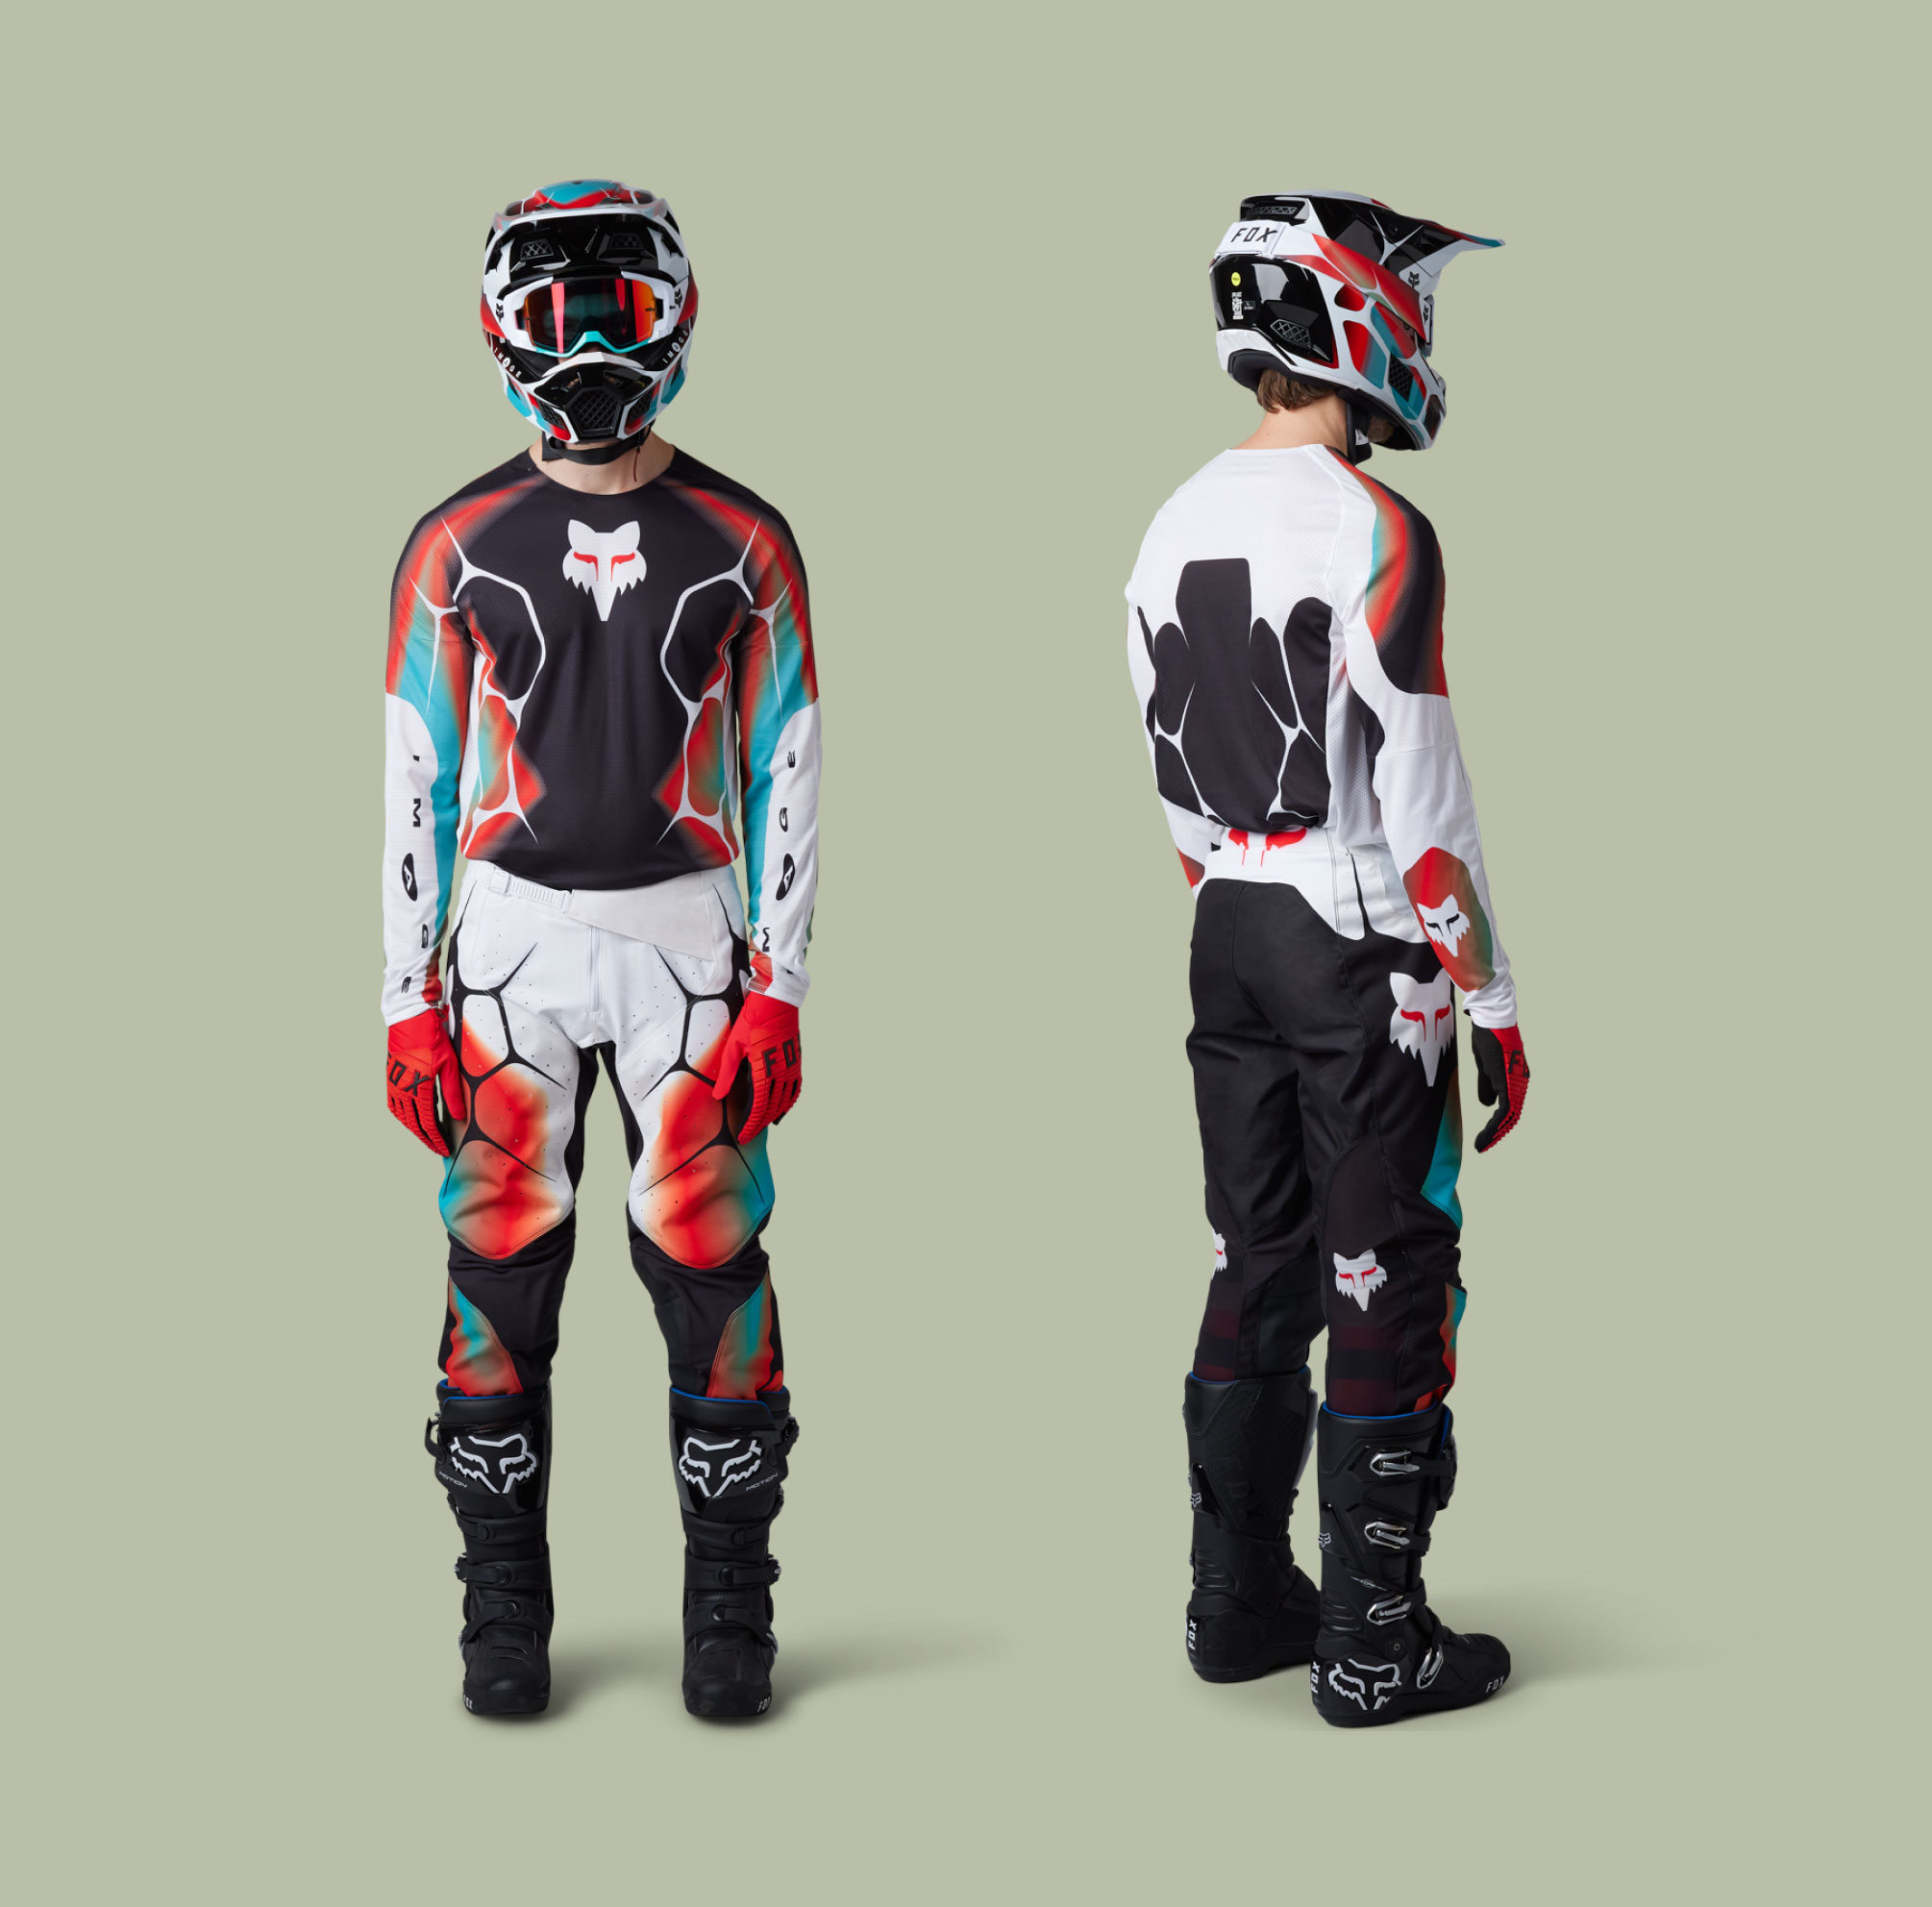 Two models wearing 360 racewear.